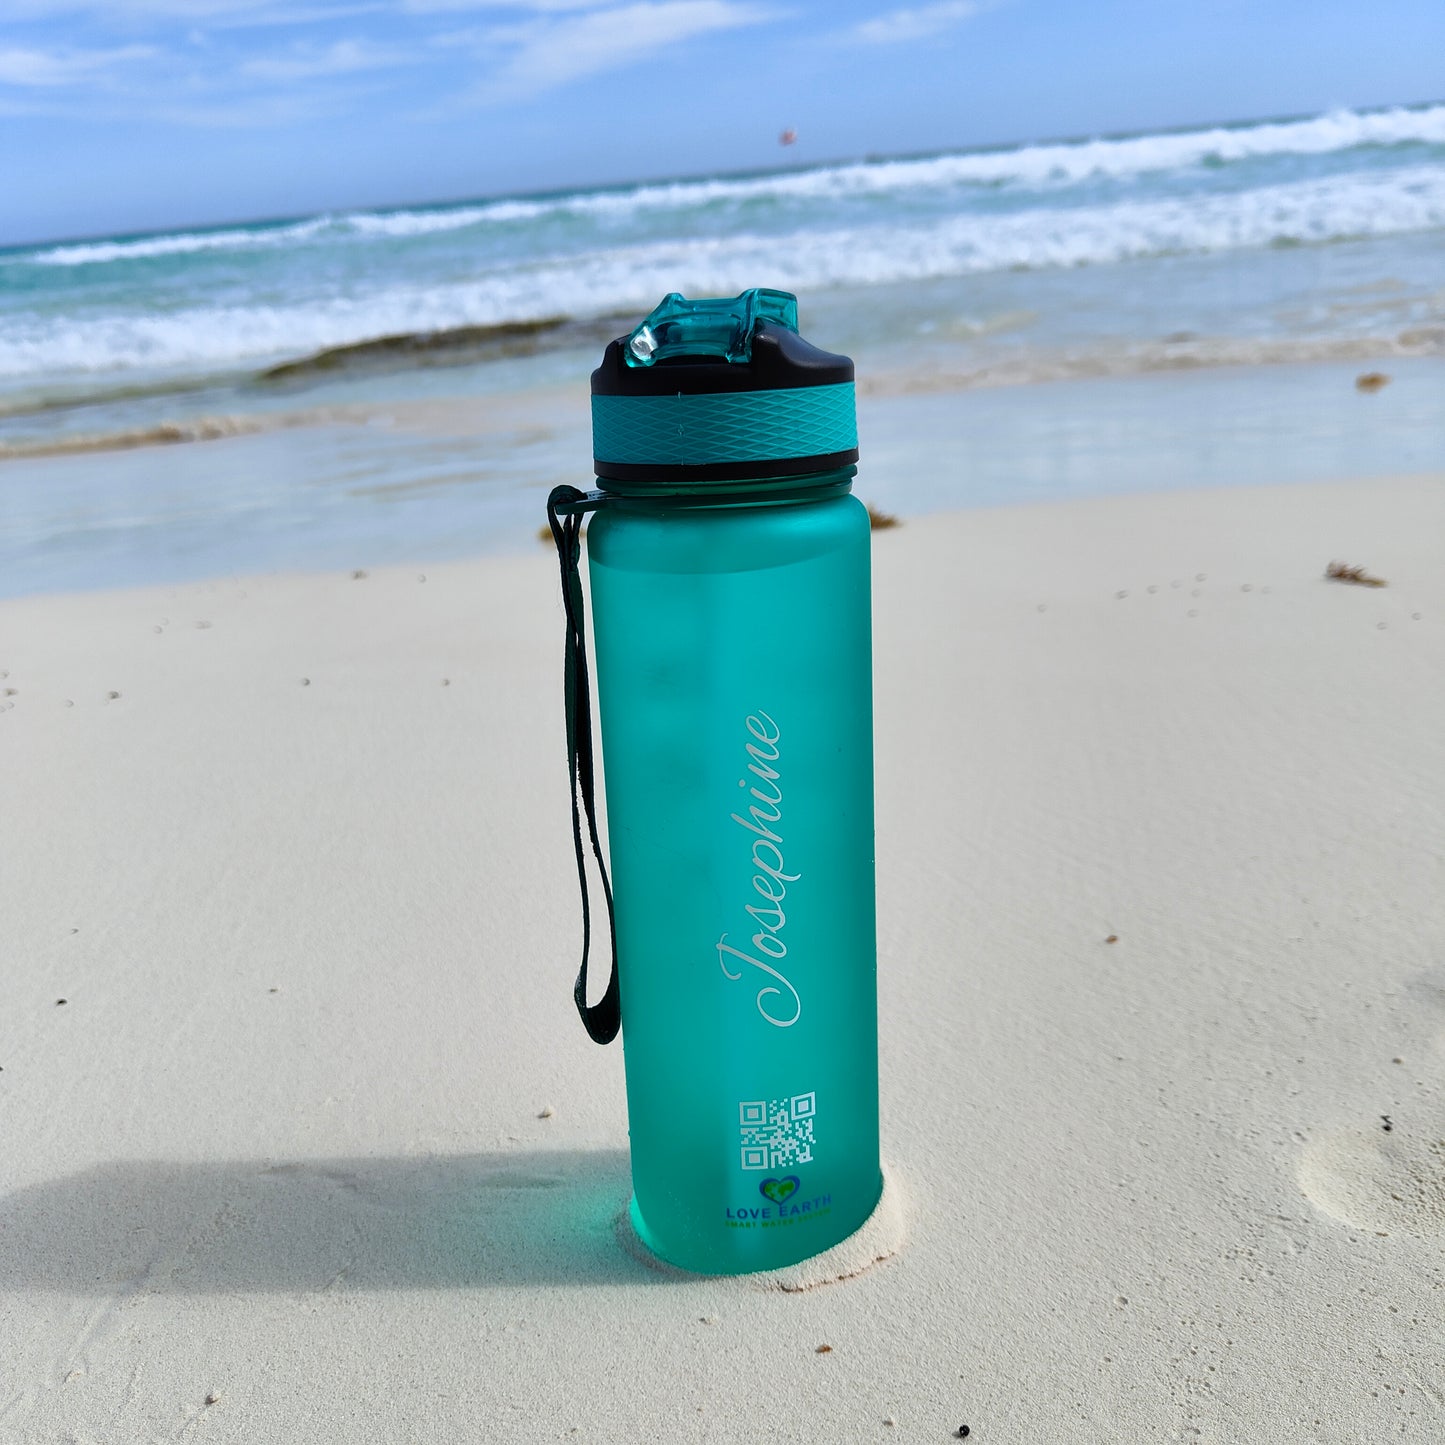 Personalized Love Earth Smart Water Bottle 100% BPA-free